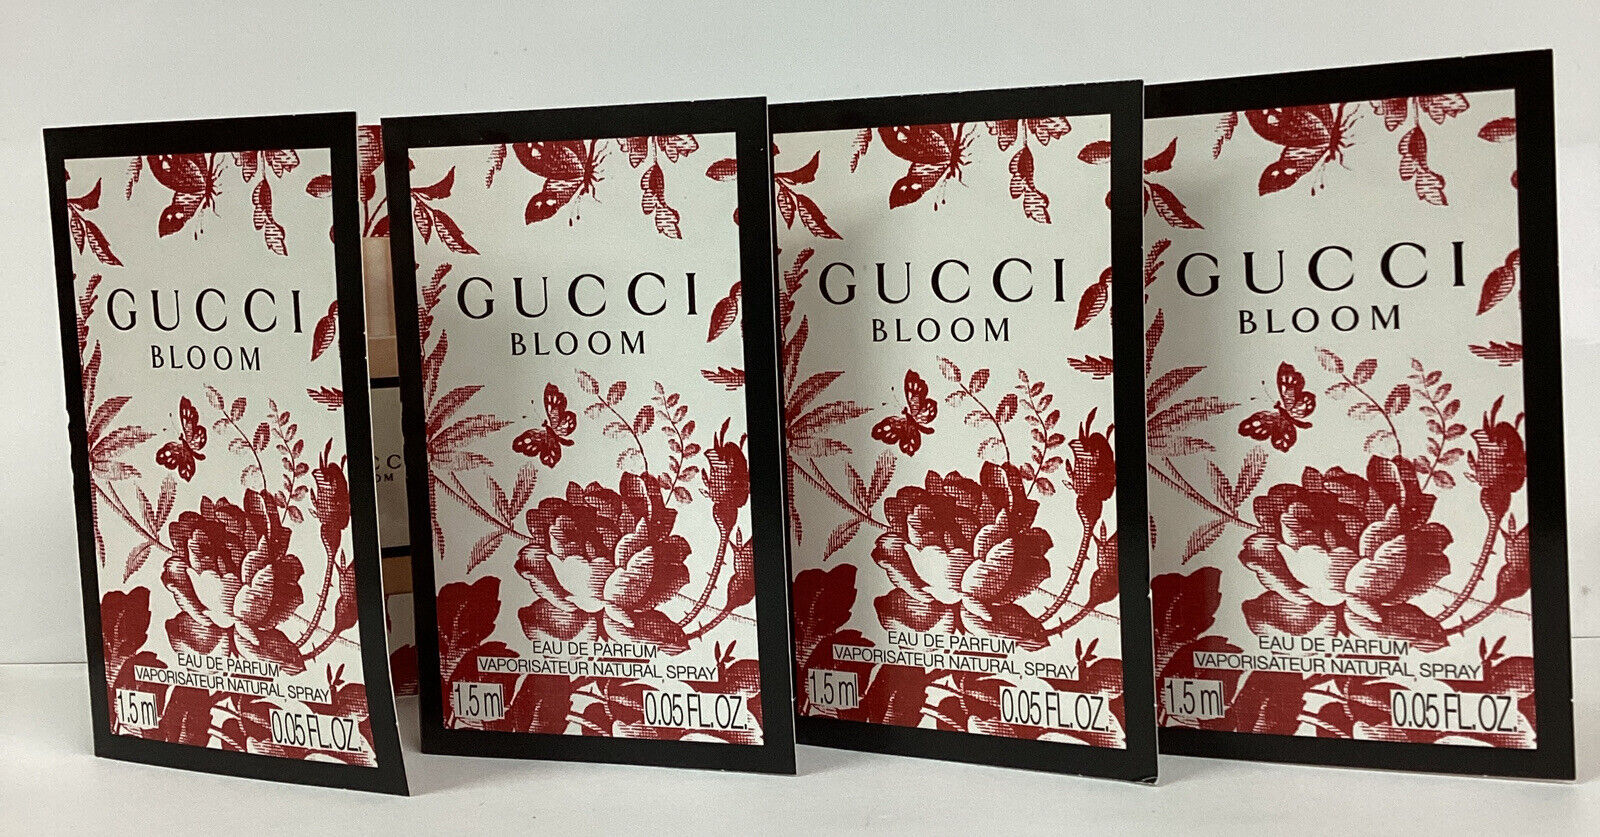 Gucci Bloom Sample LOT OF 4 Eau De Parfum 0.05oz As Pictured